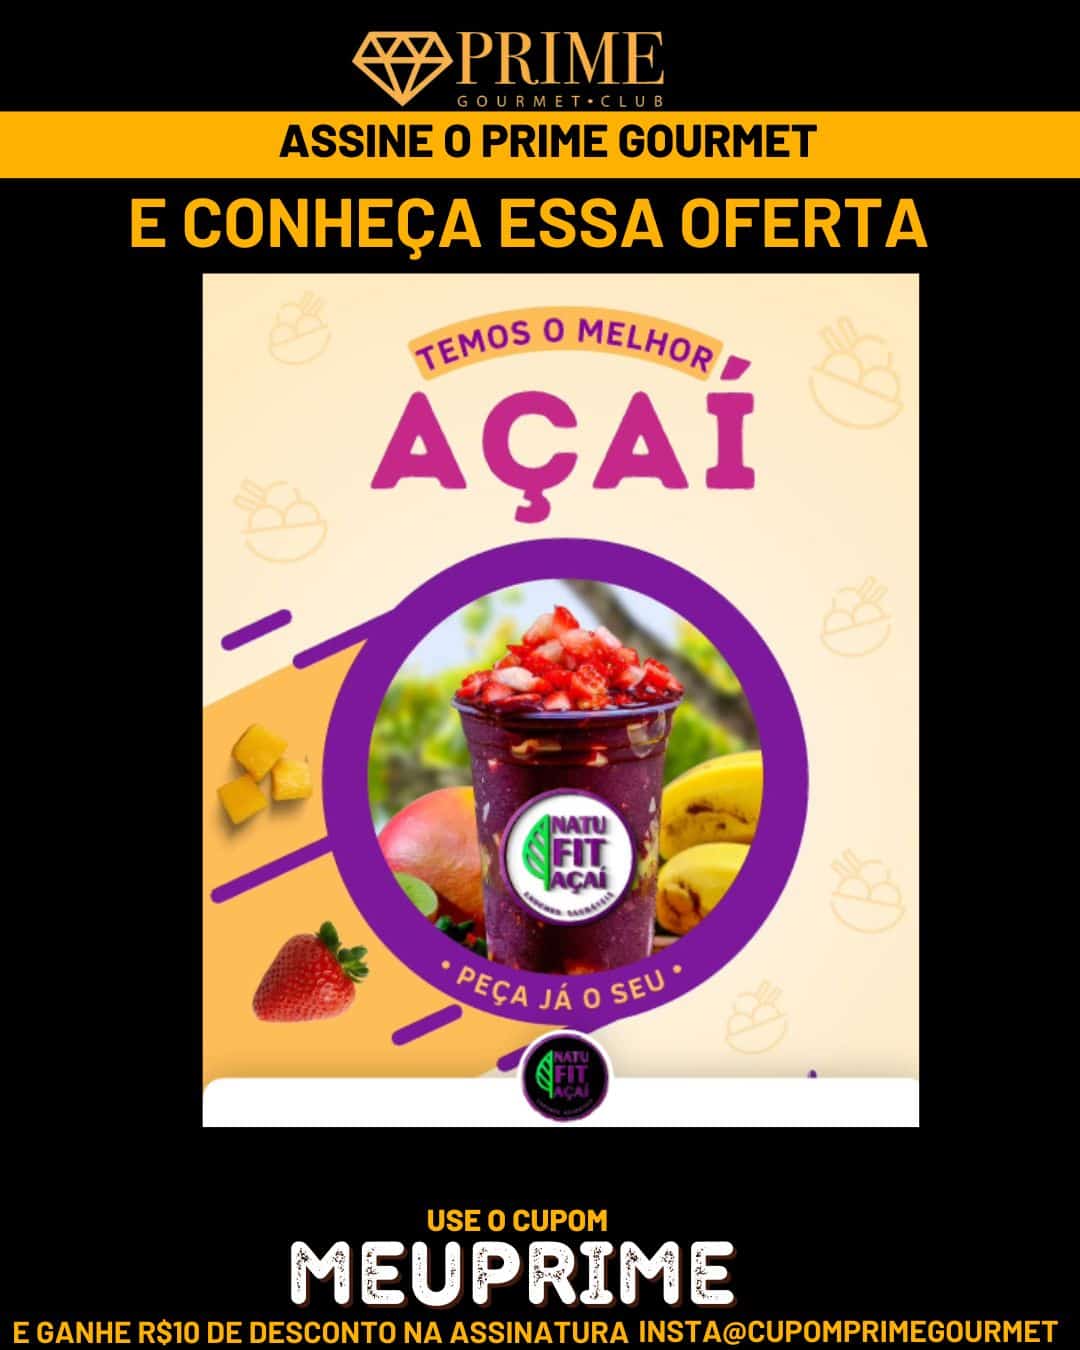 Prime Gourmet Maranhão e Região - NatuFit Açai e Lanches